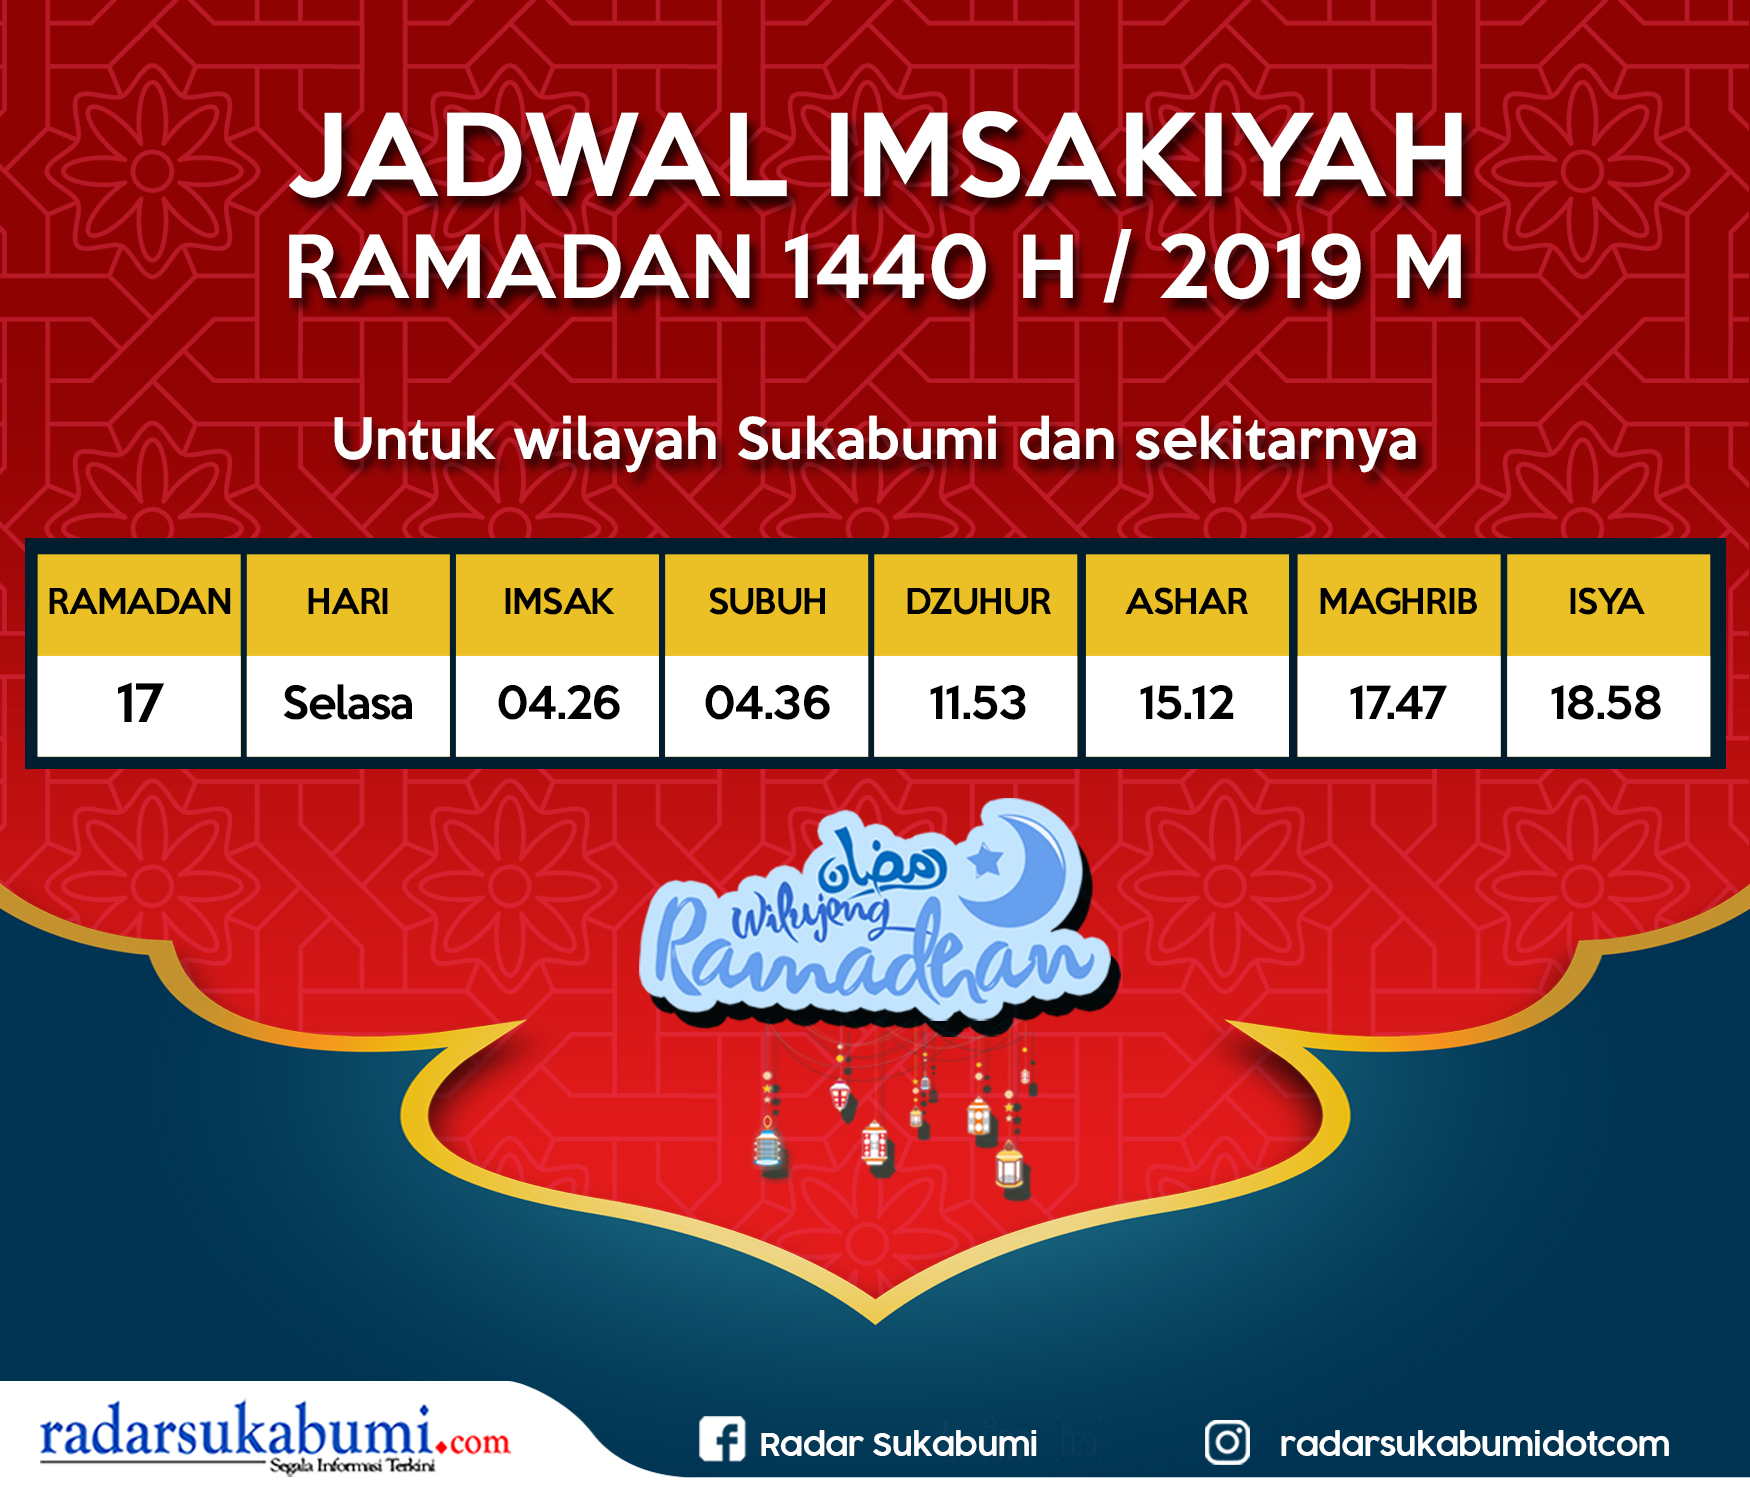 Puasa Hari ke-17, Jadwal Imsakiyah Sukabumi | Radar Sukabumi